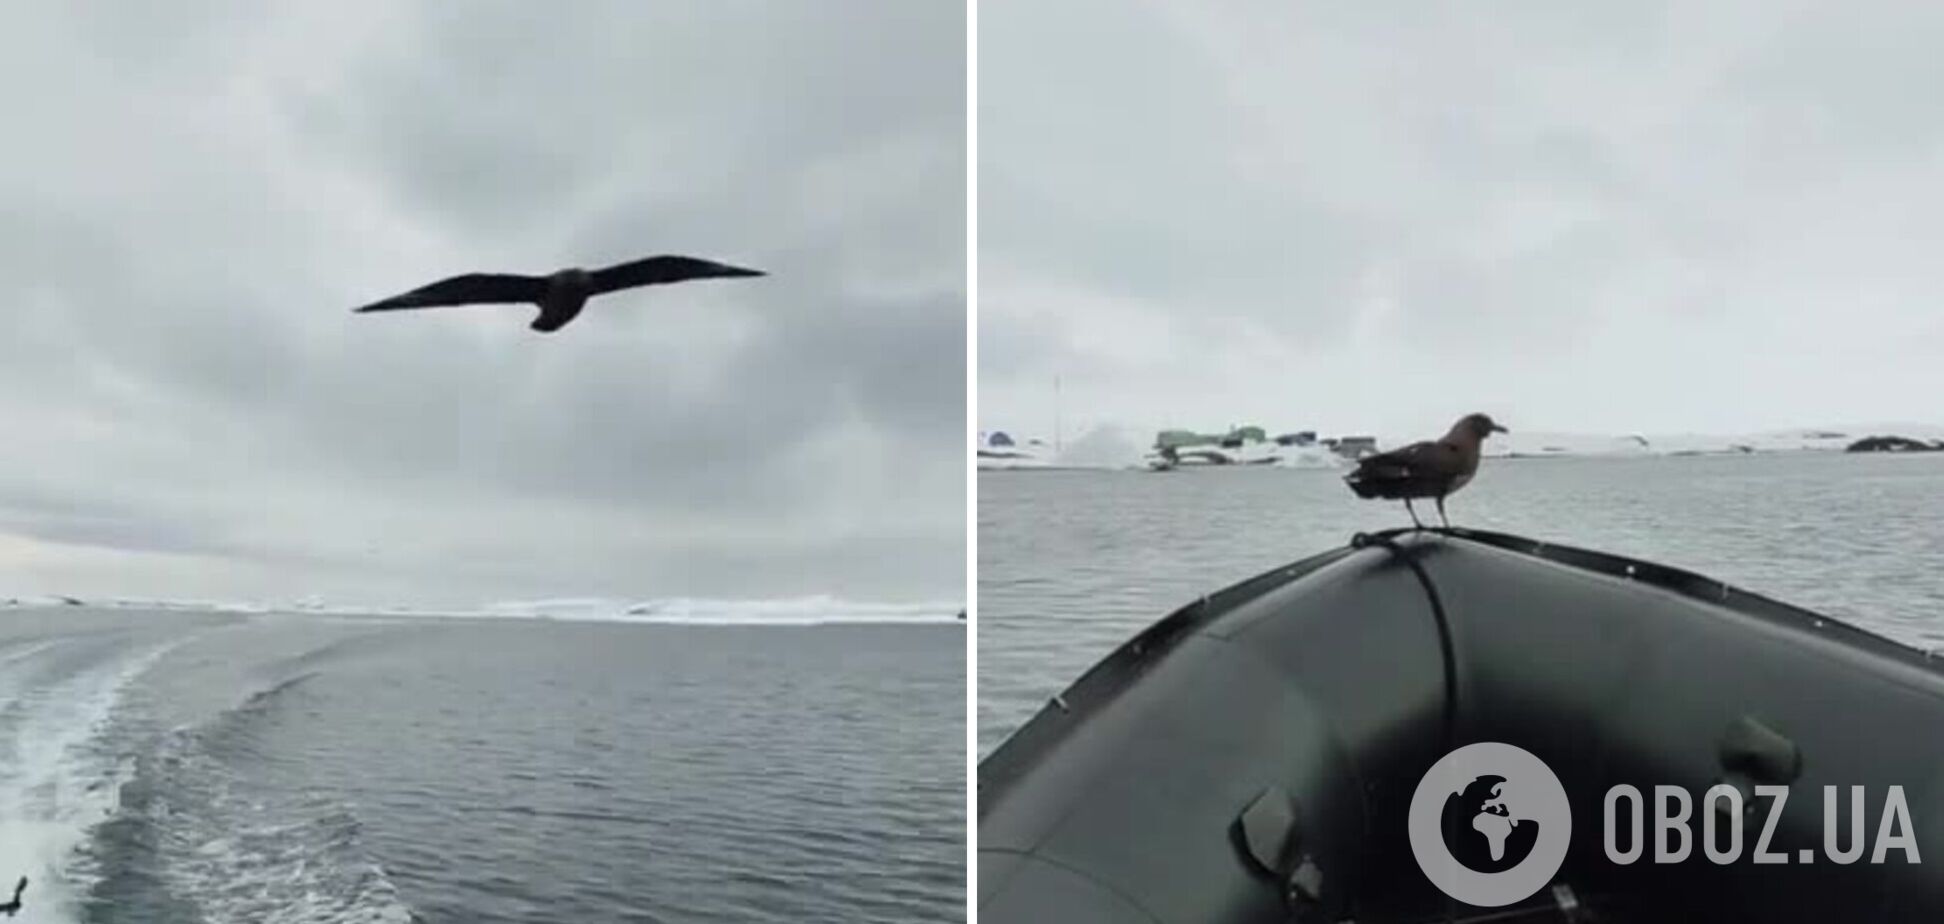 'Зачем лететь, когда можно подъехать?' Морская птица скуа прокатилась до станции Вернадского на лодке украинских полярников. Видео